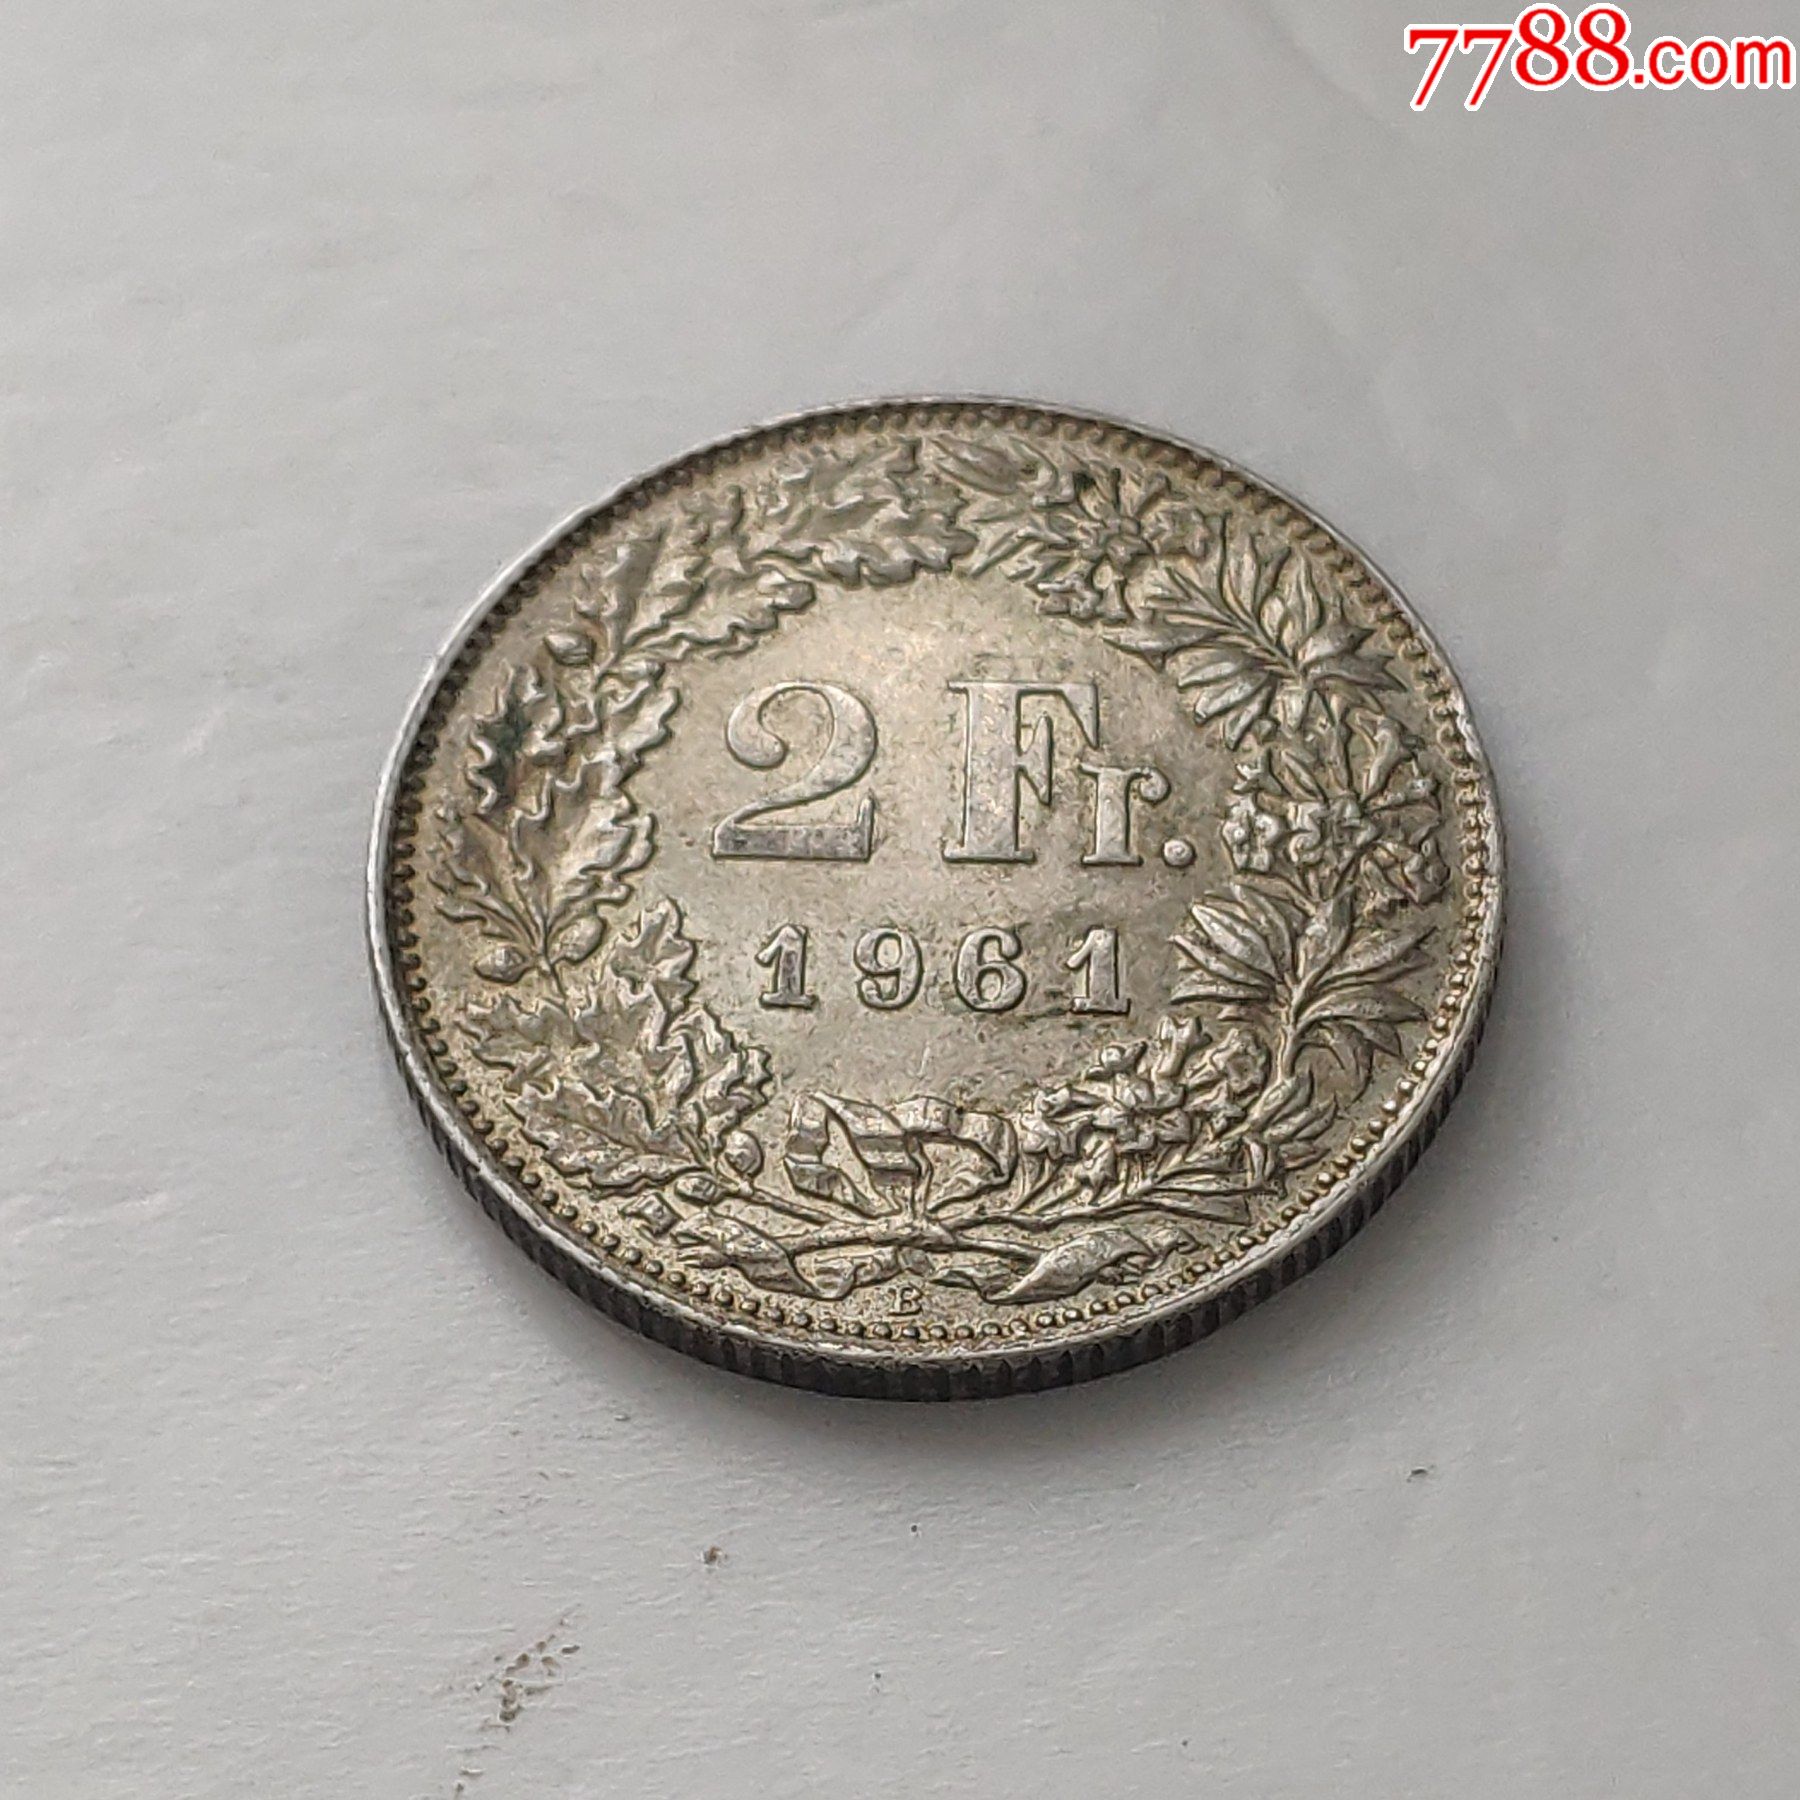 瑞士2法郎1961年全新银币